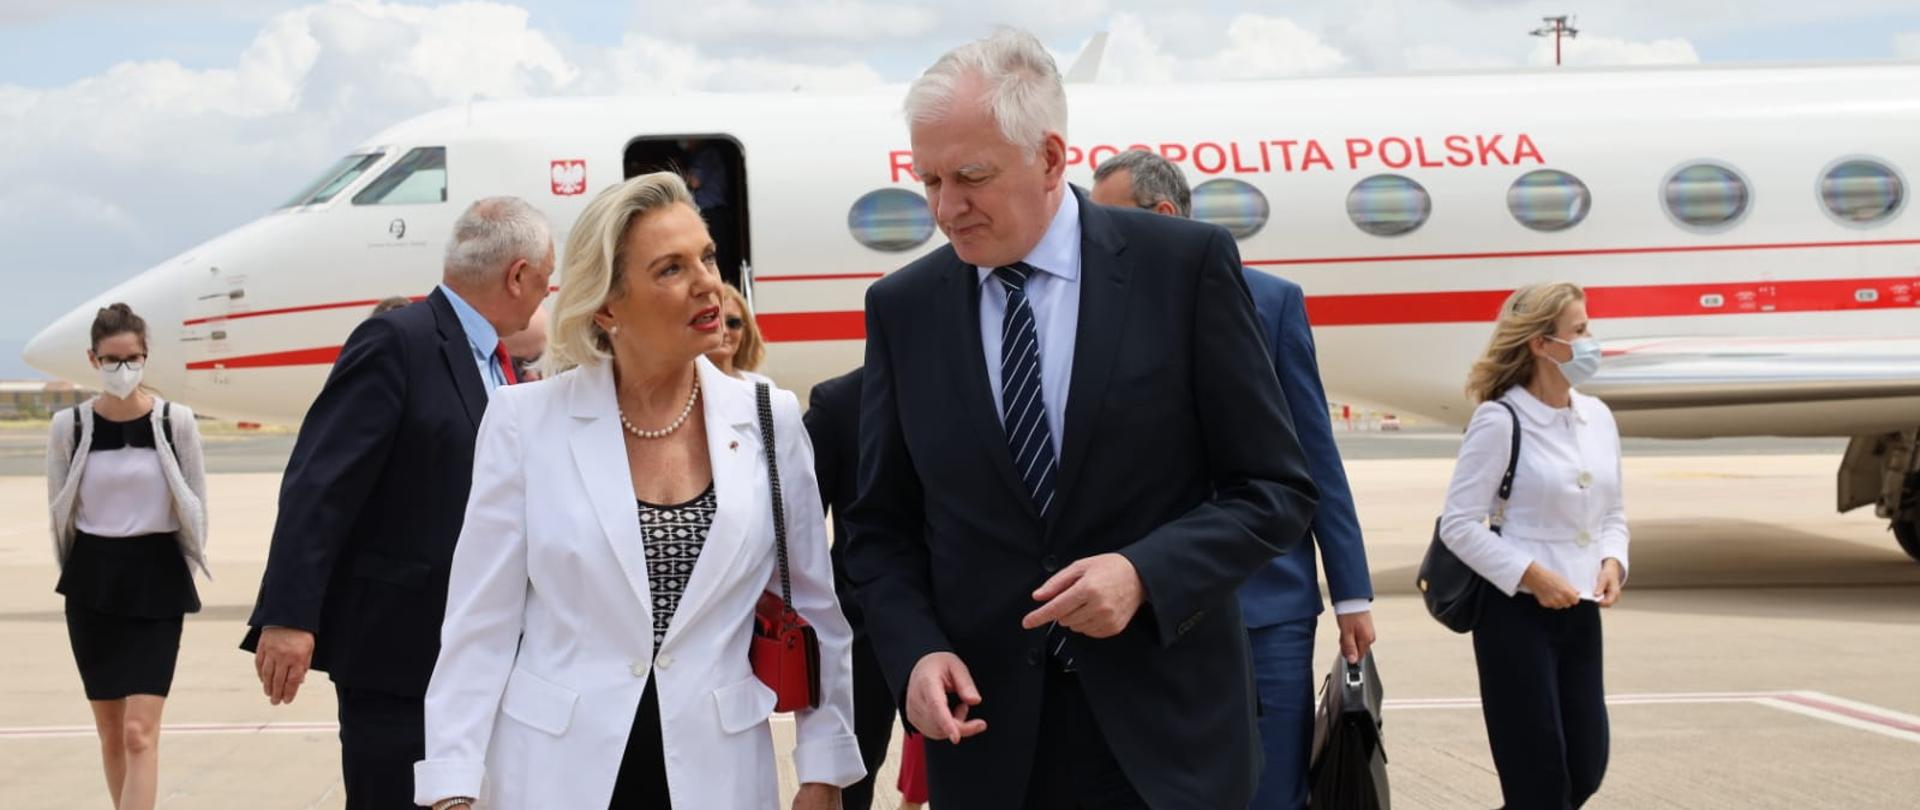 Wicepremier Jarosław Gowin oraz ambasador RP we Włoszech Anna Maria Anders na płycie lotniska. W tle samolot rządowy.